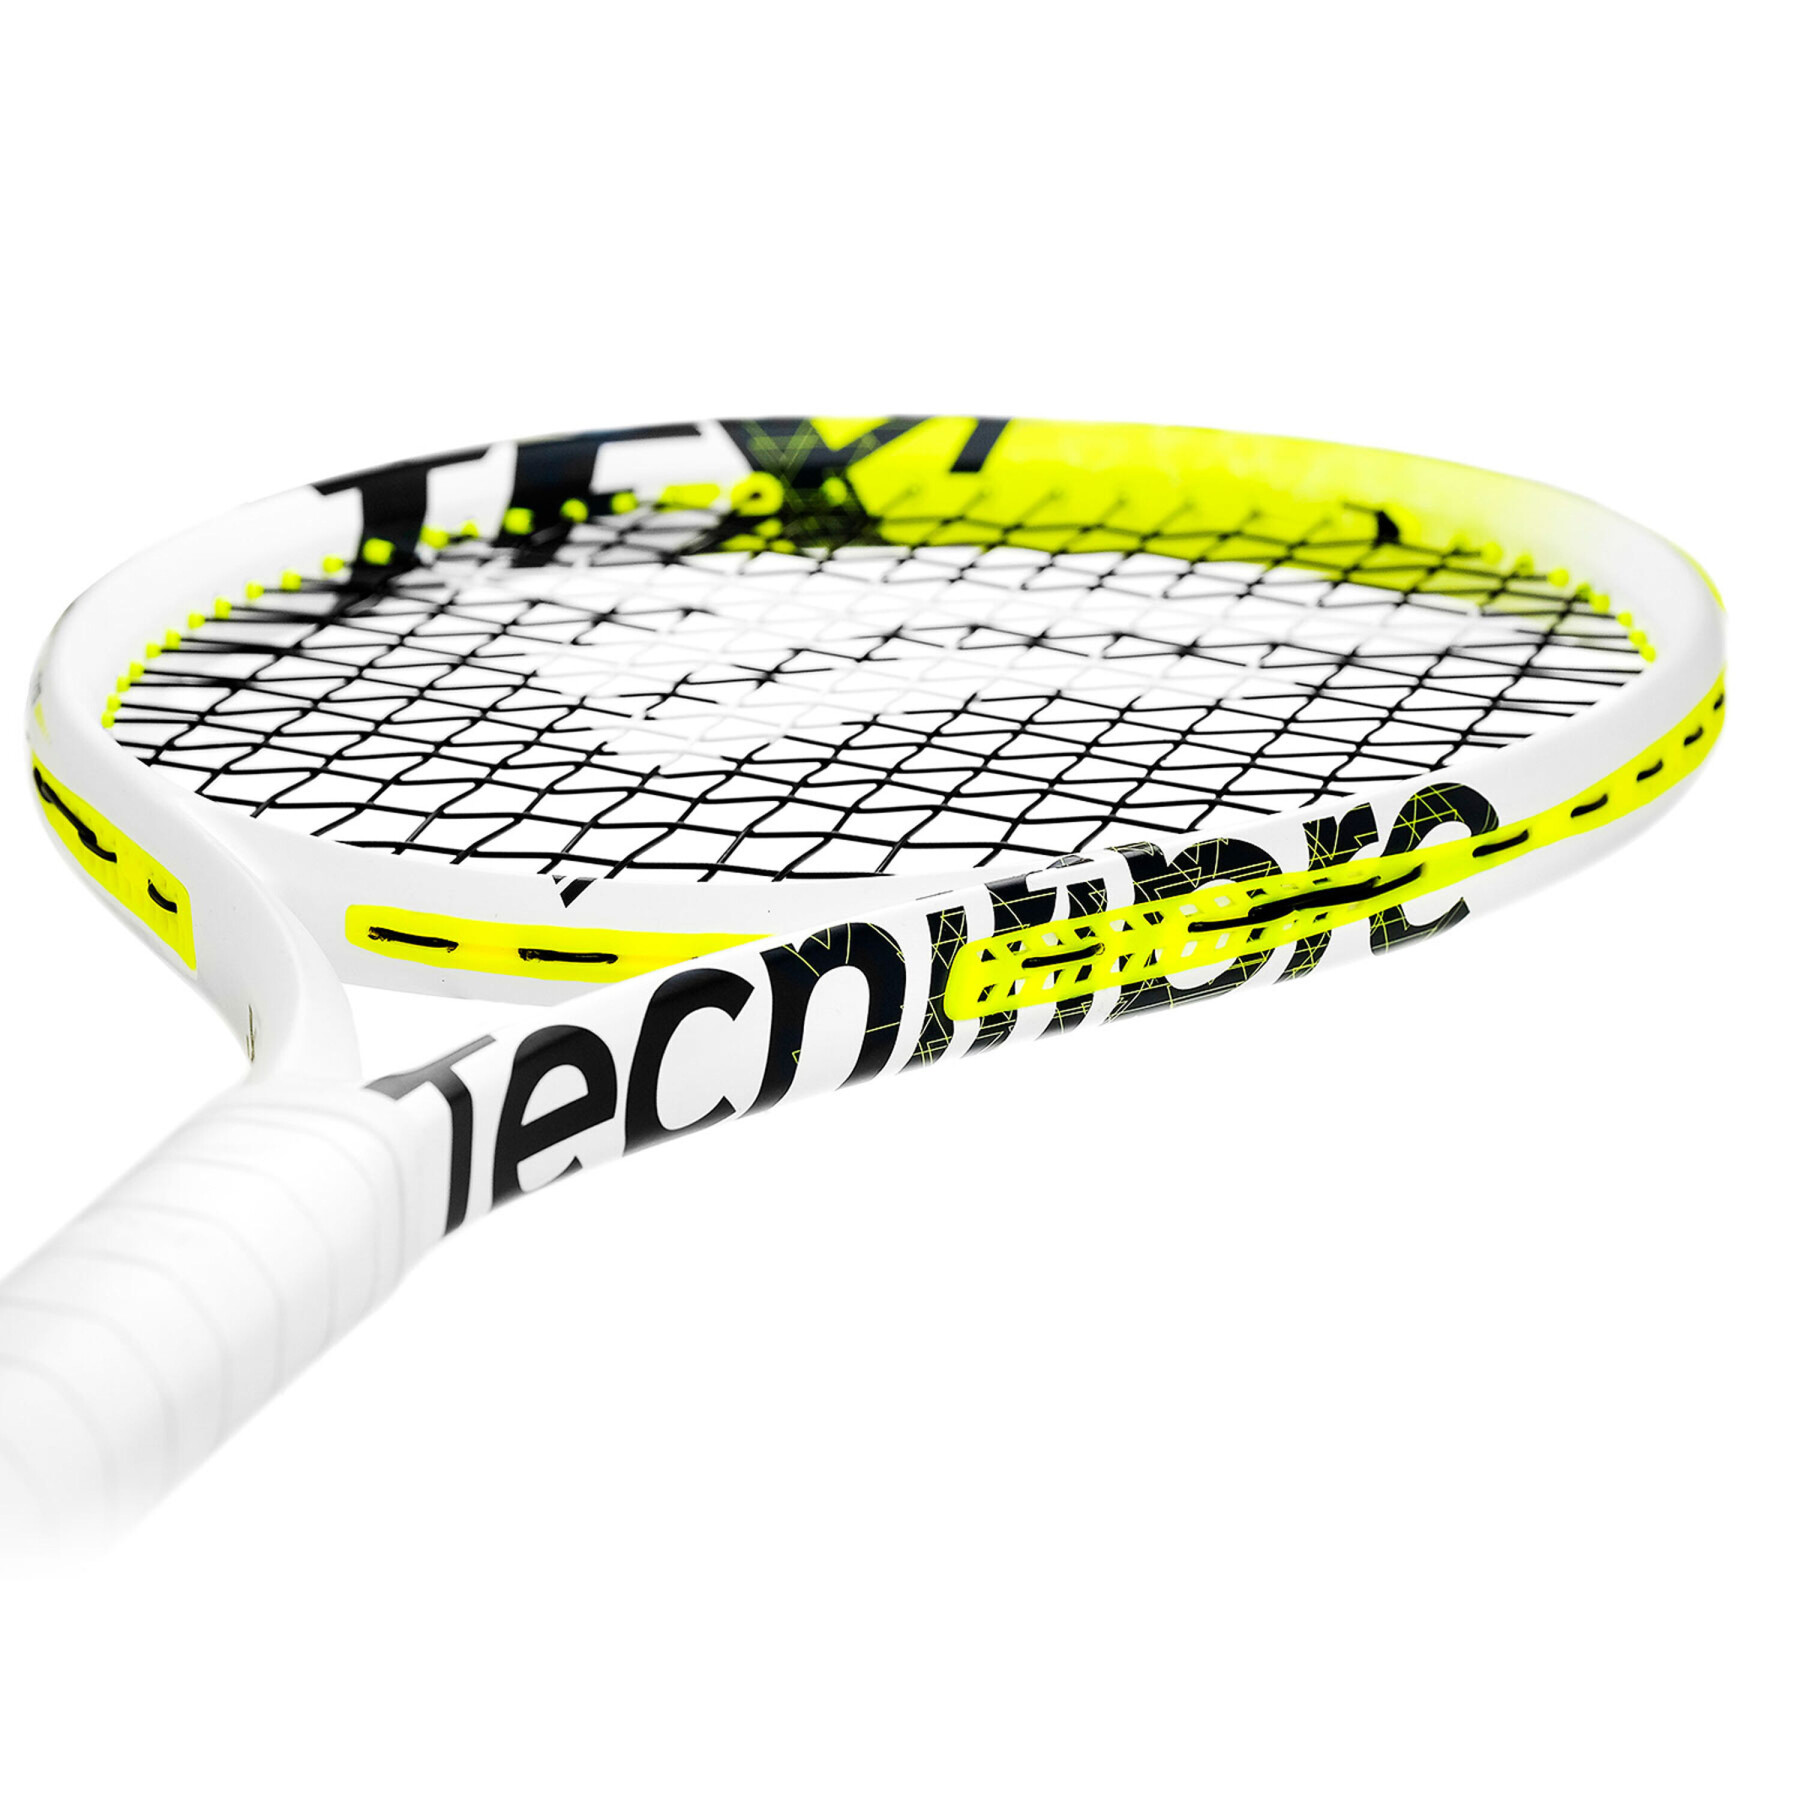 Raqueta de tenis Tecnifibre TF-X1 V2 305